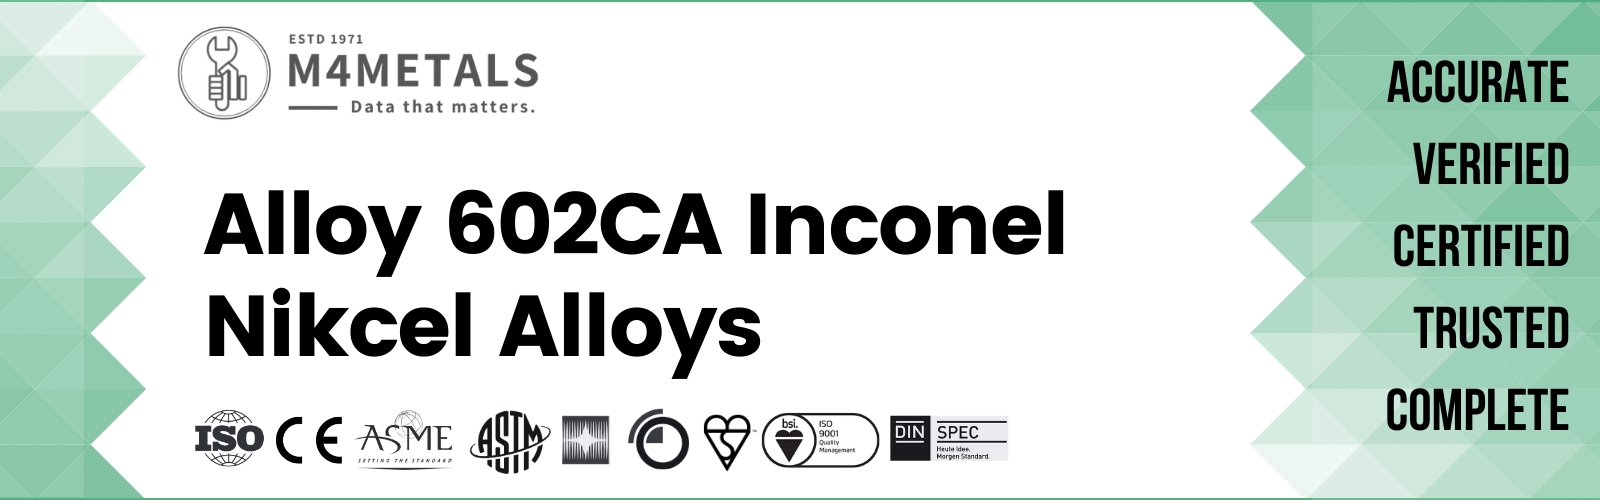 Inconel Alloy 602CA